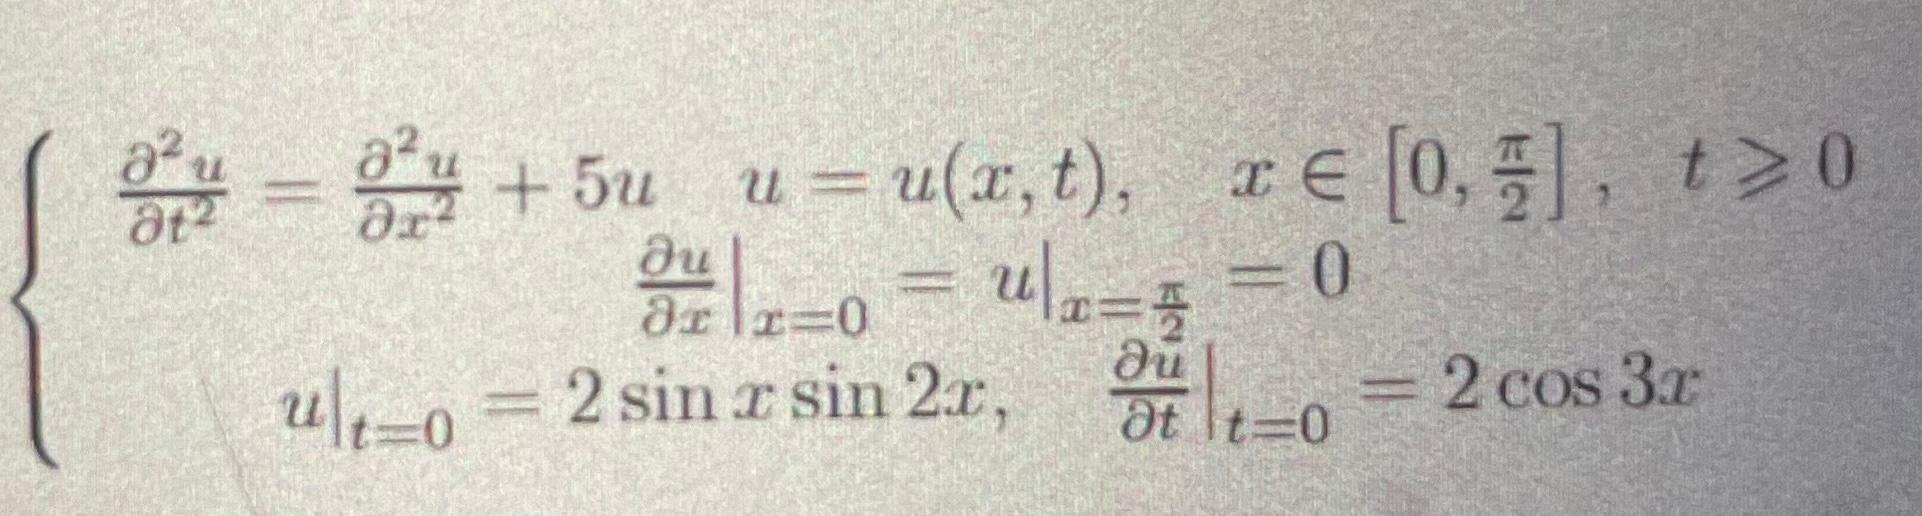 \( \left\{\begin{array}{c}\frac{\partial^{2} u}{\partial t^{2}}=\frac{\partial^{2} u}{\partial x^{2}}+5 u \quad u=u(x, t), \q